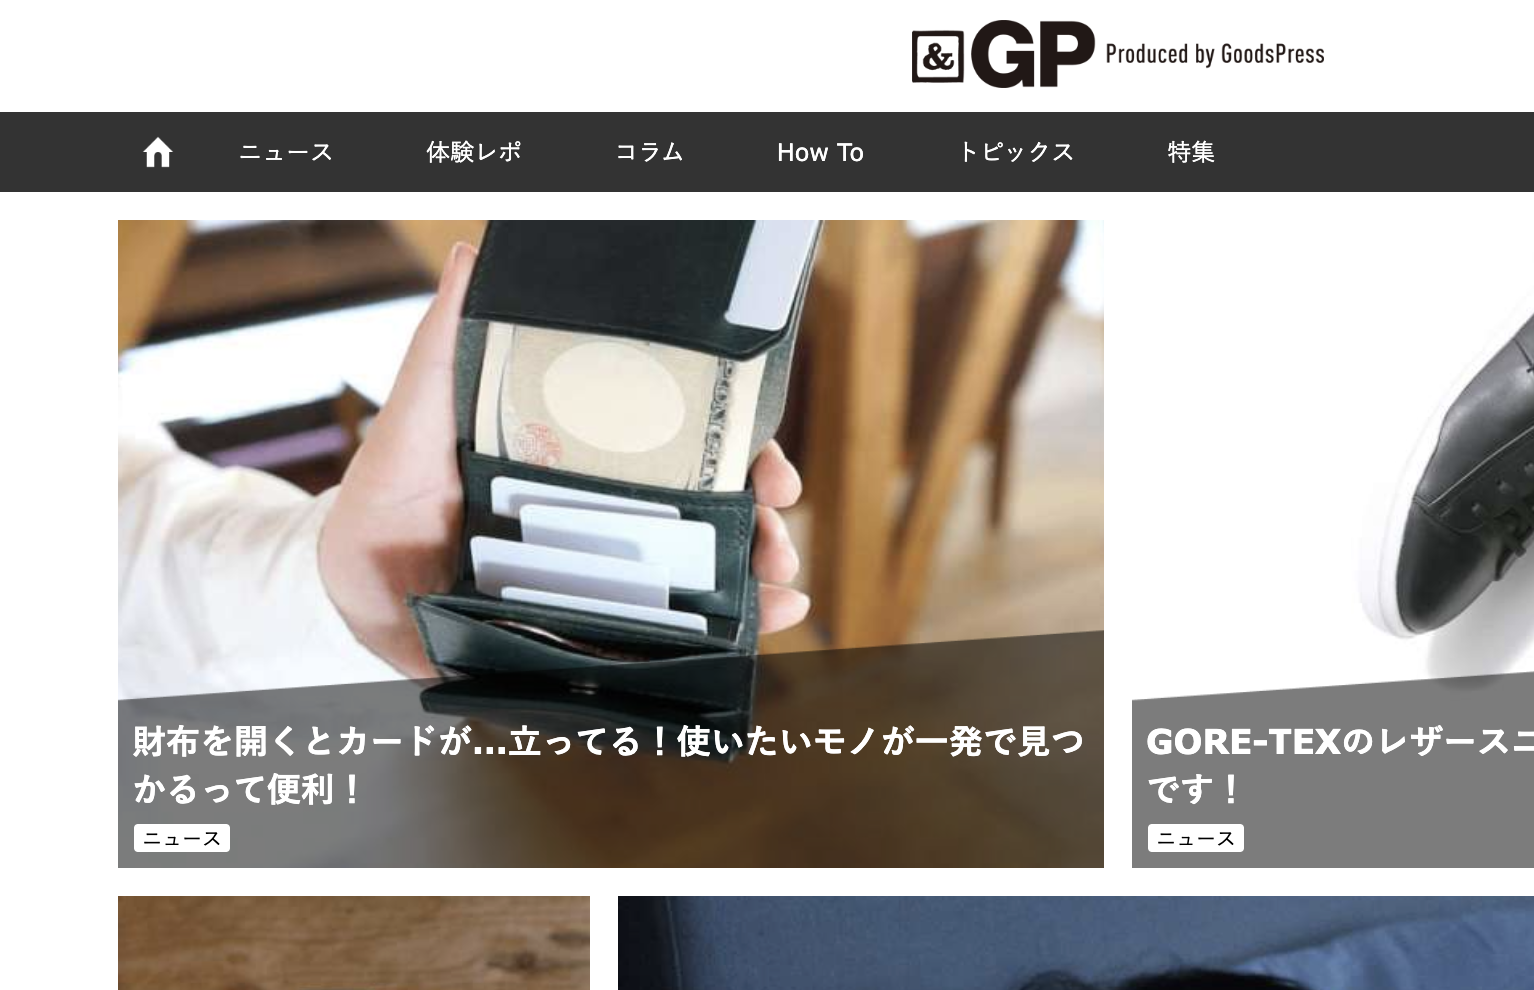 「GoodsPress」のWebメディア「＆GP」 にマイクロウォレットSU liscio®︎を掲載頂きました！